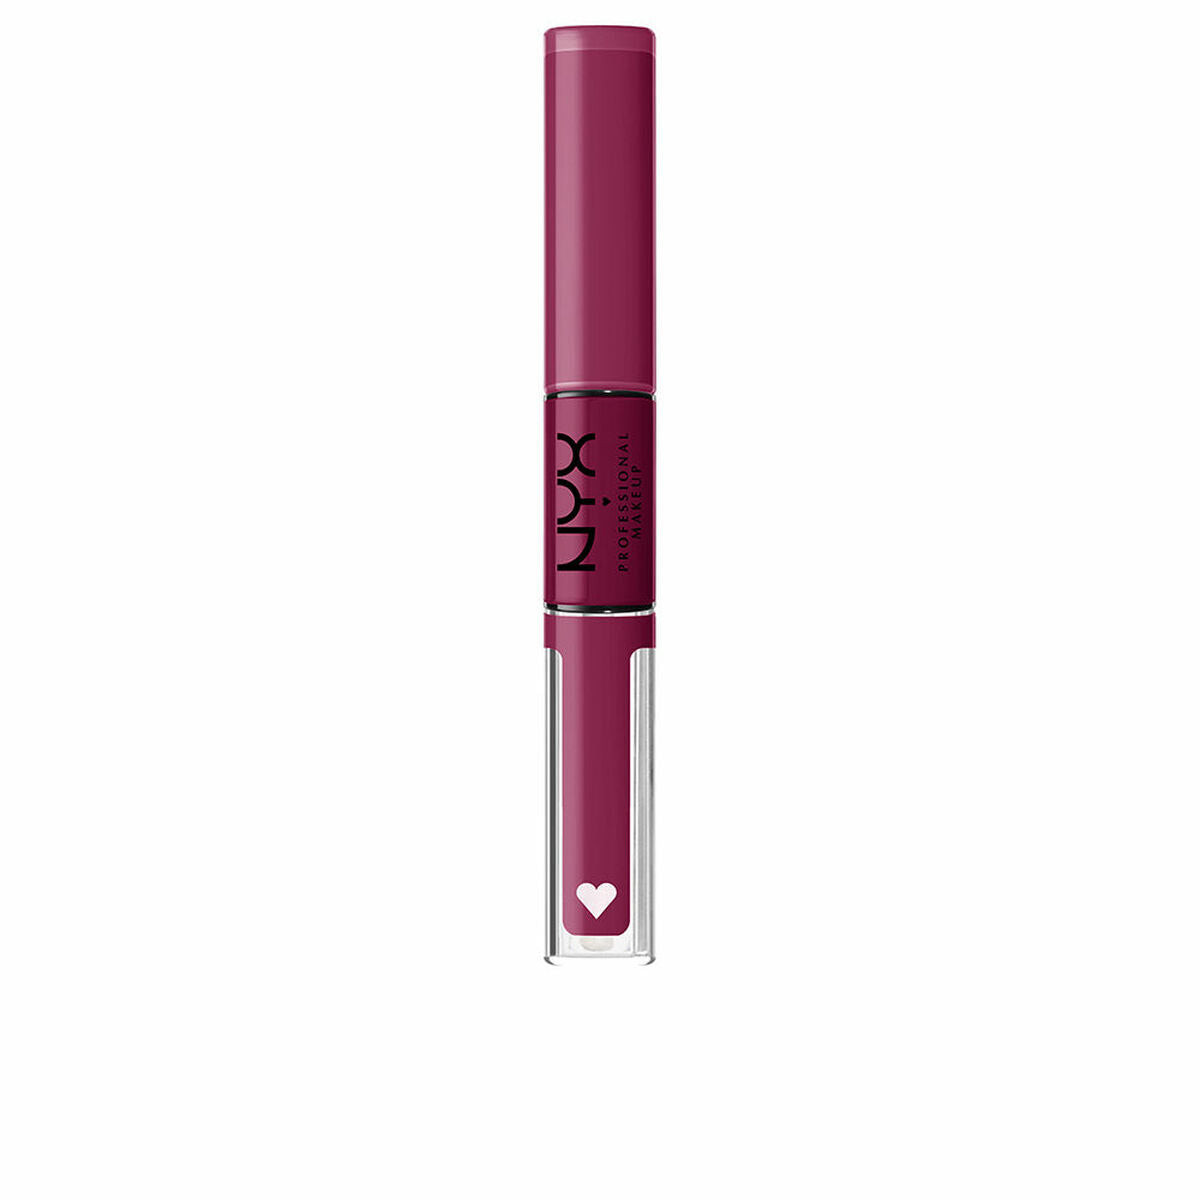 Lipstick liquido NYX Shine forte 2 in 1 nº 20 in carica 3,4 ml